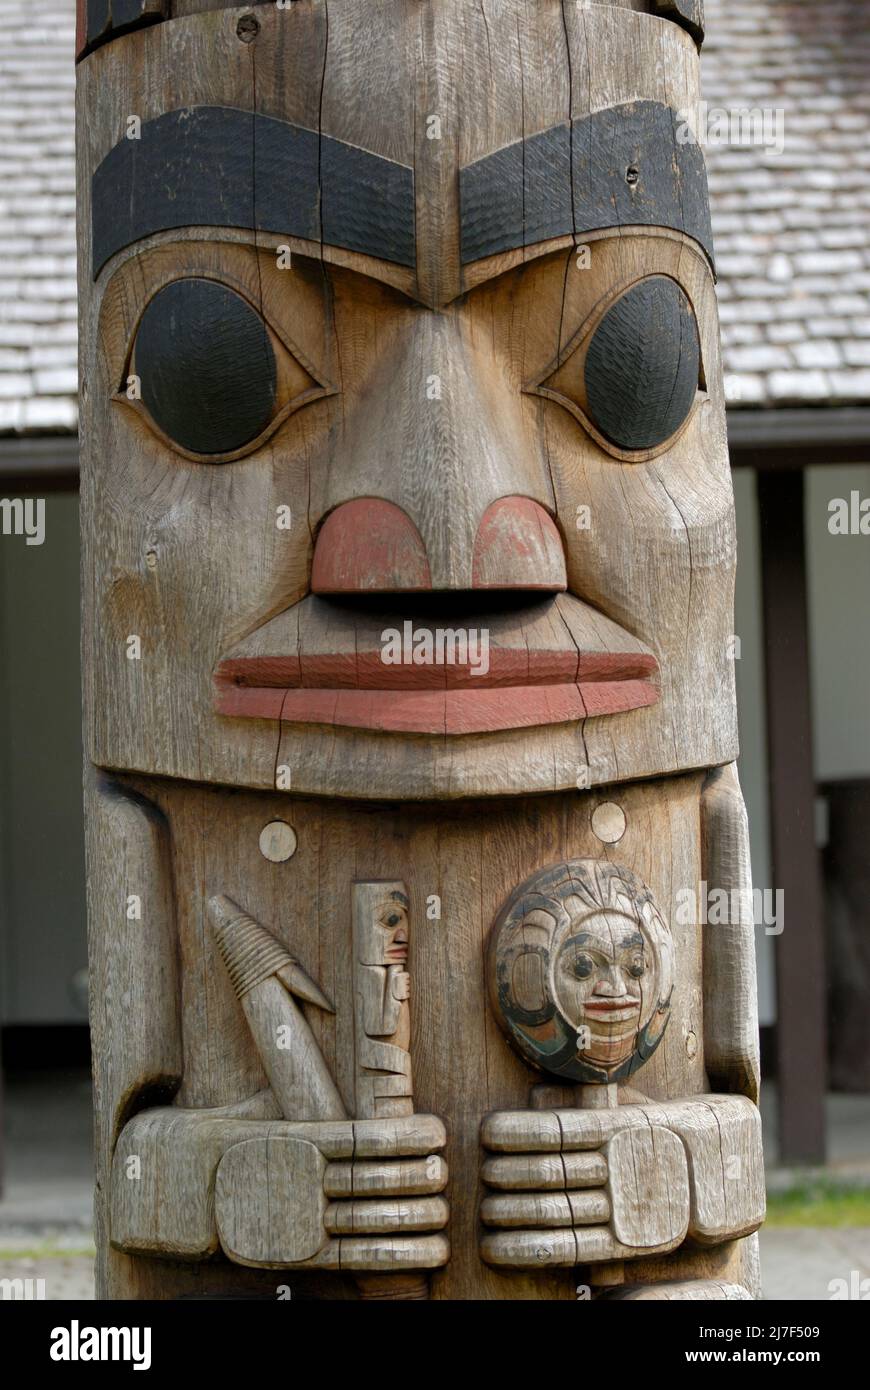 Totem polo de la gente Tlingit en Alaska. Foto de stock